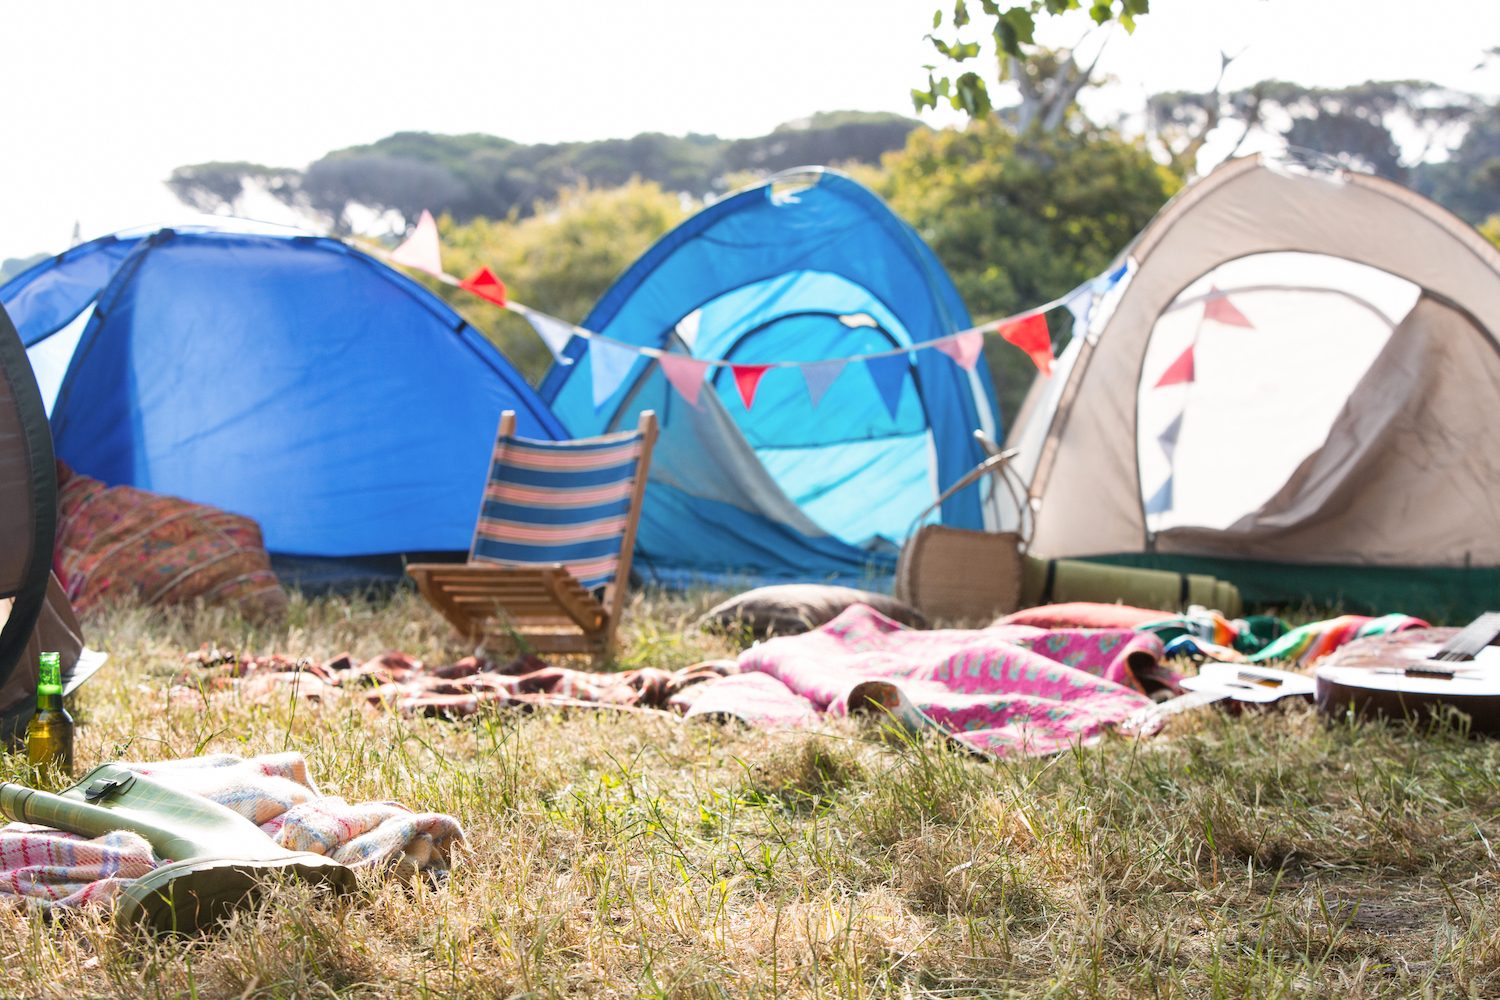 Camping music. Пустой лагерь. Кемпинг зона пустая. Музыкальный фестиваль фото палатки. Ugly Camping blurry image.